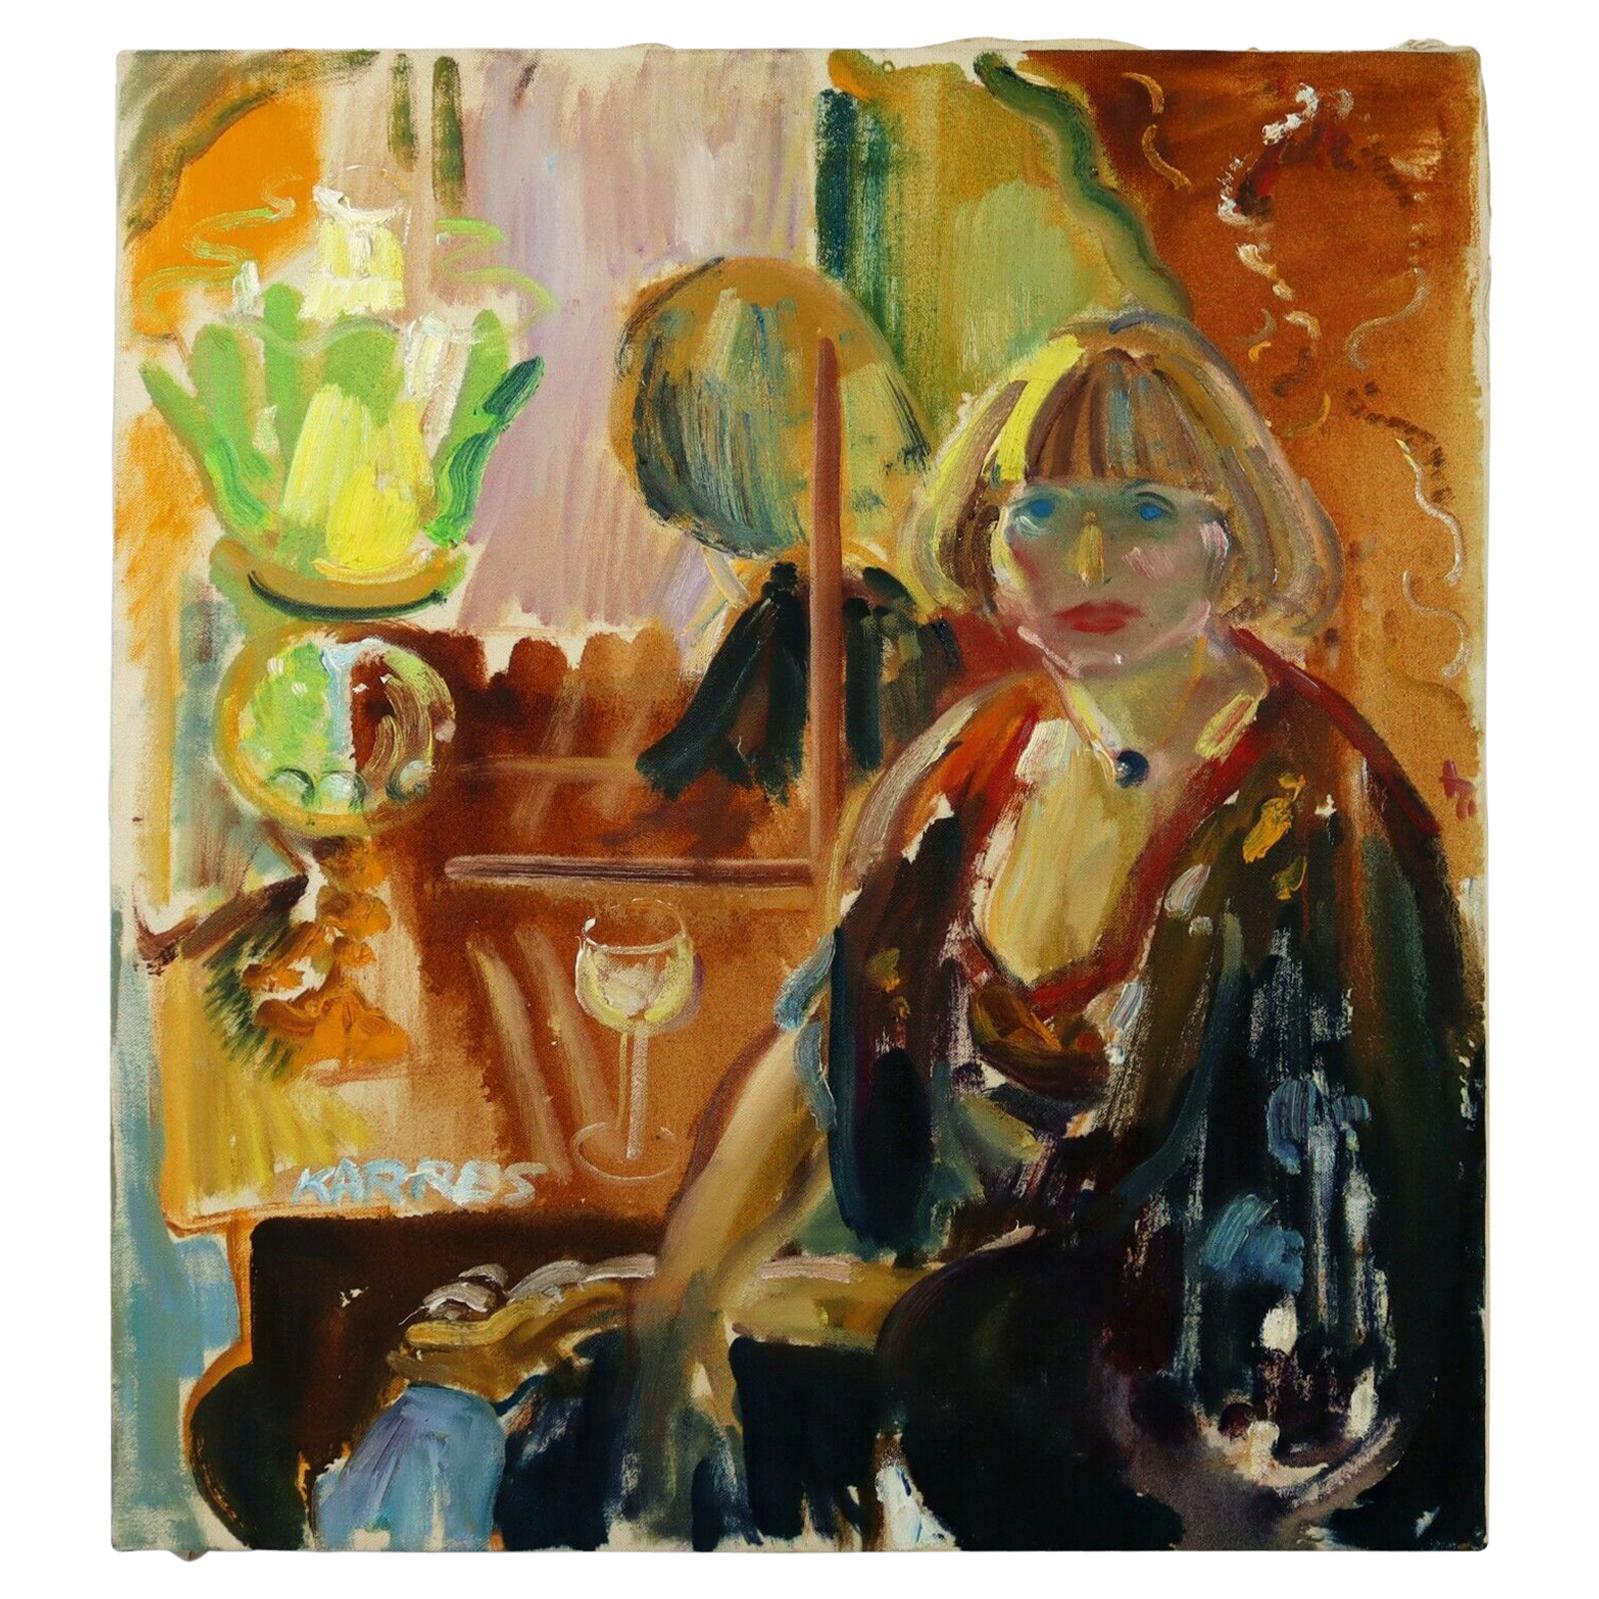 Sam Karres Modern Portrait Oil Painting on Canvas Signed Unframed